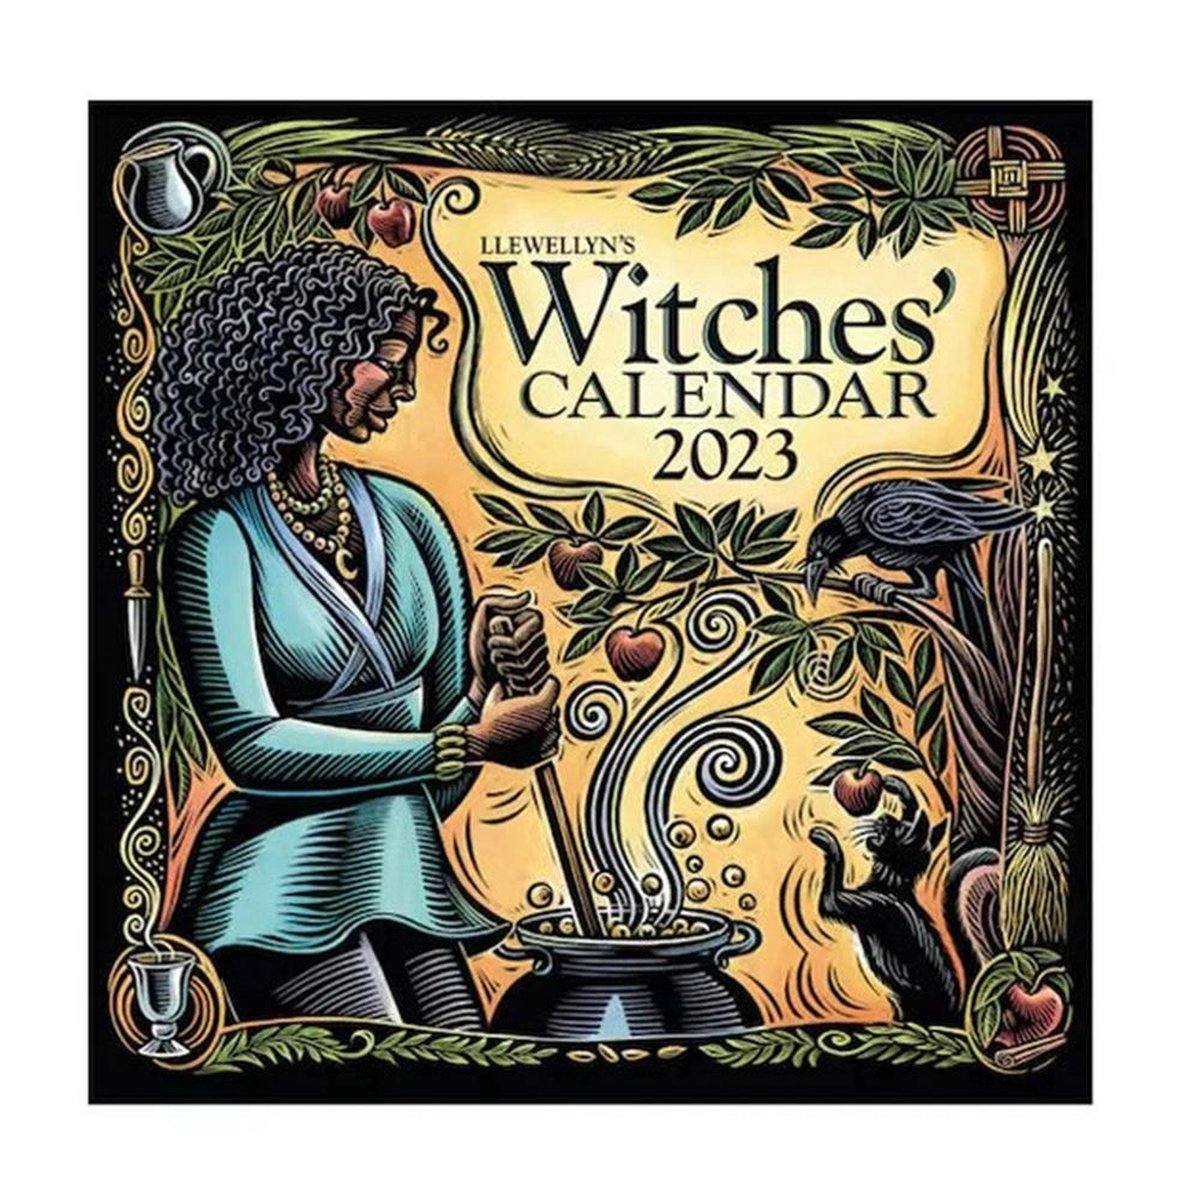 Heksenkalender 2023 - Omlegkalender - Heks thema